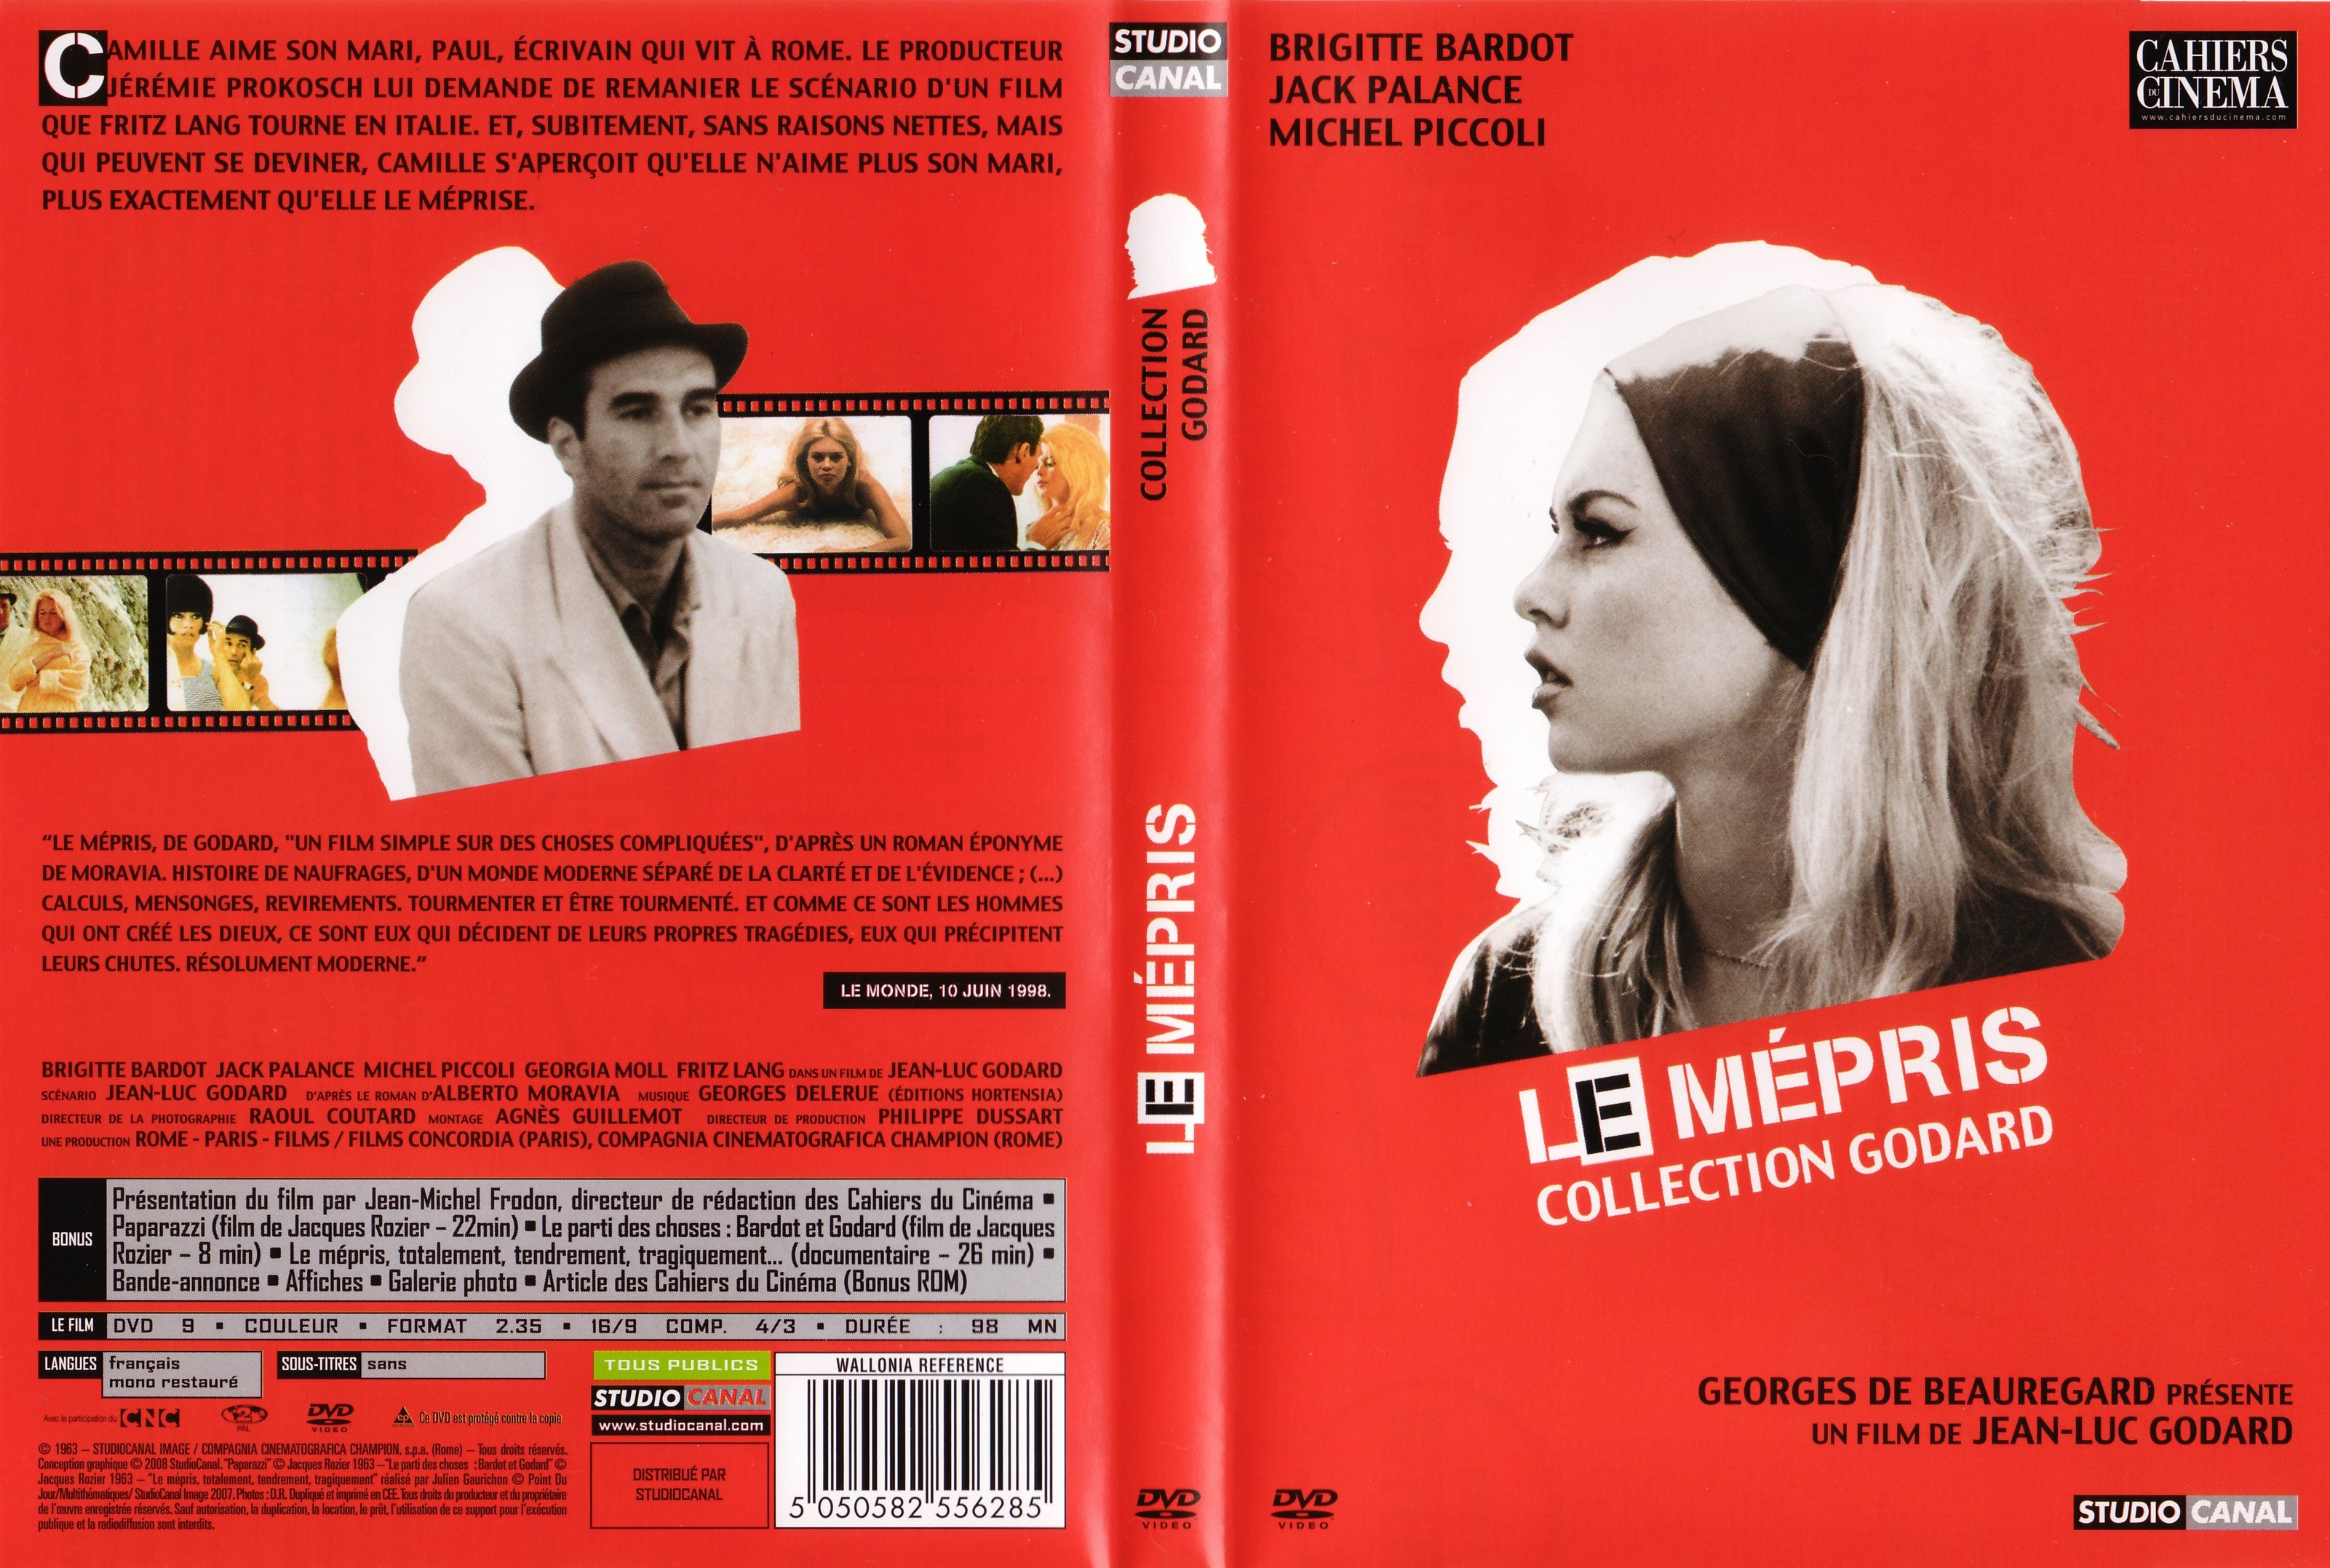 Jaquette DVD Le mpris v3